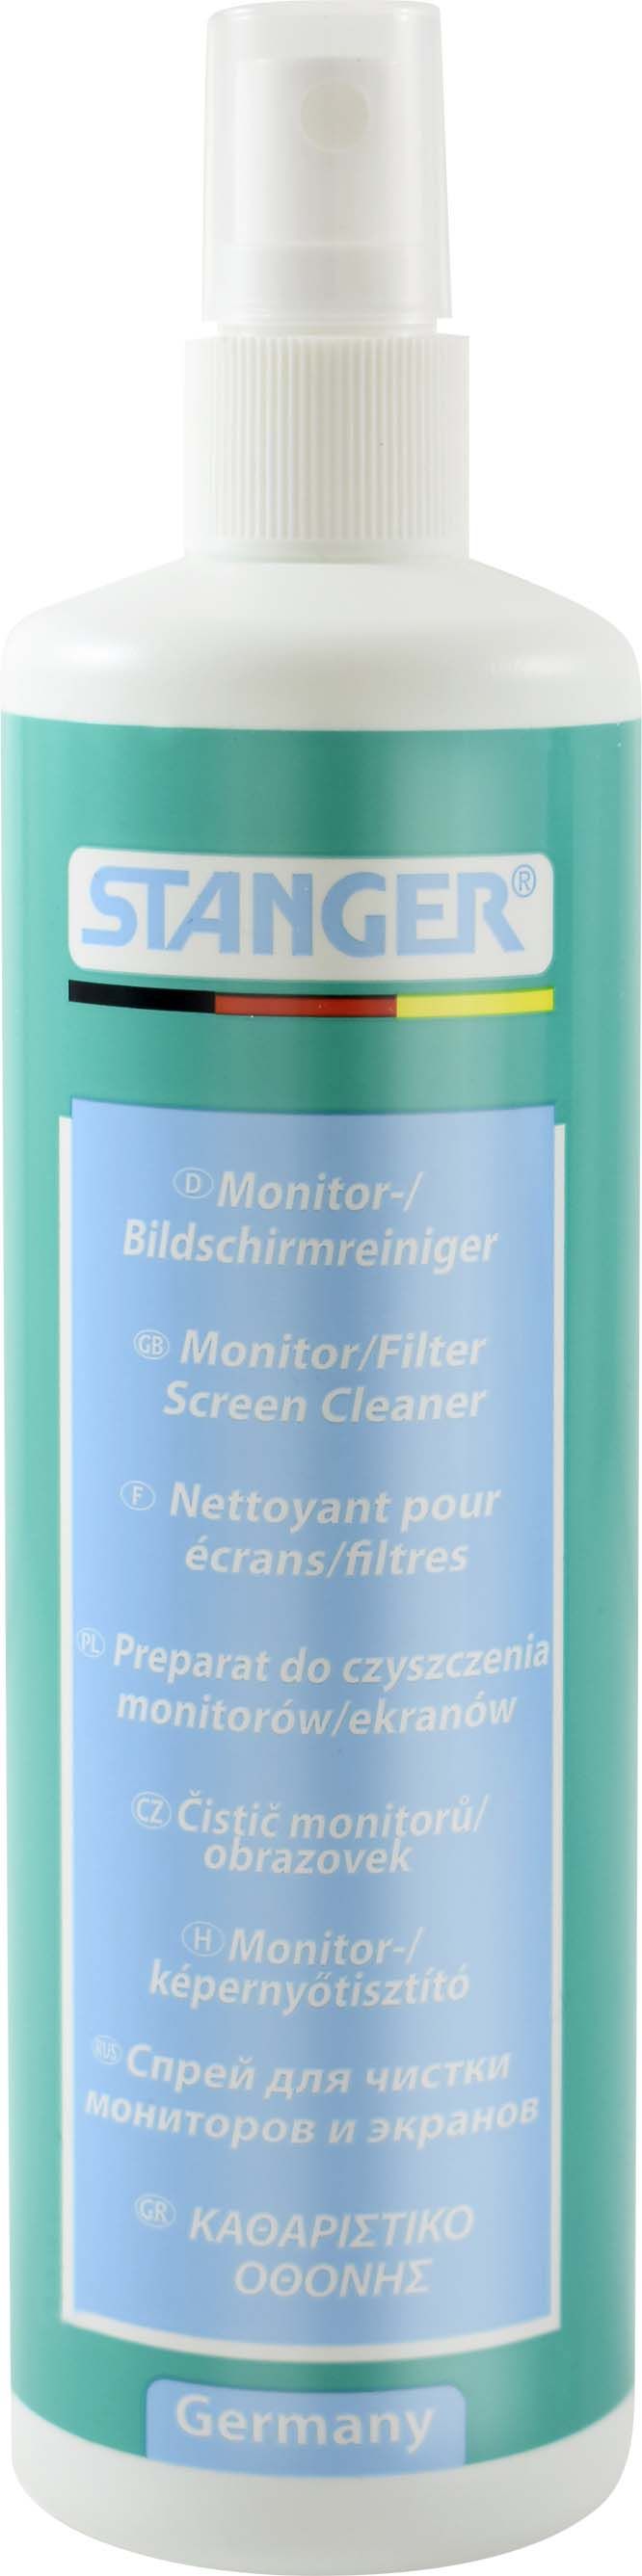 Spray Curatare Monitor Stanger - 250 Ml 2021 sanito.ro